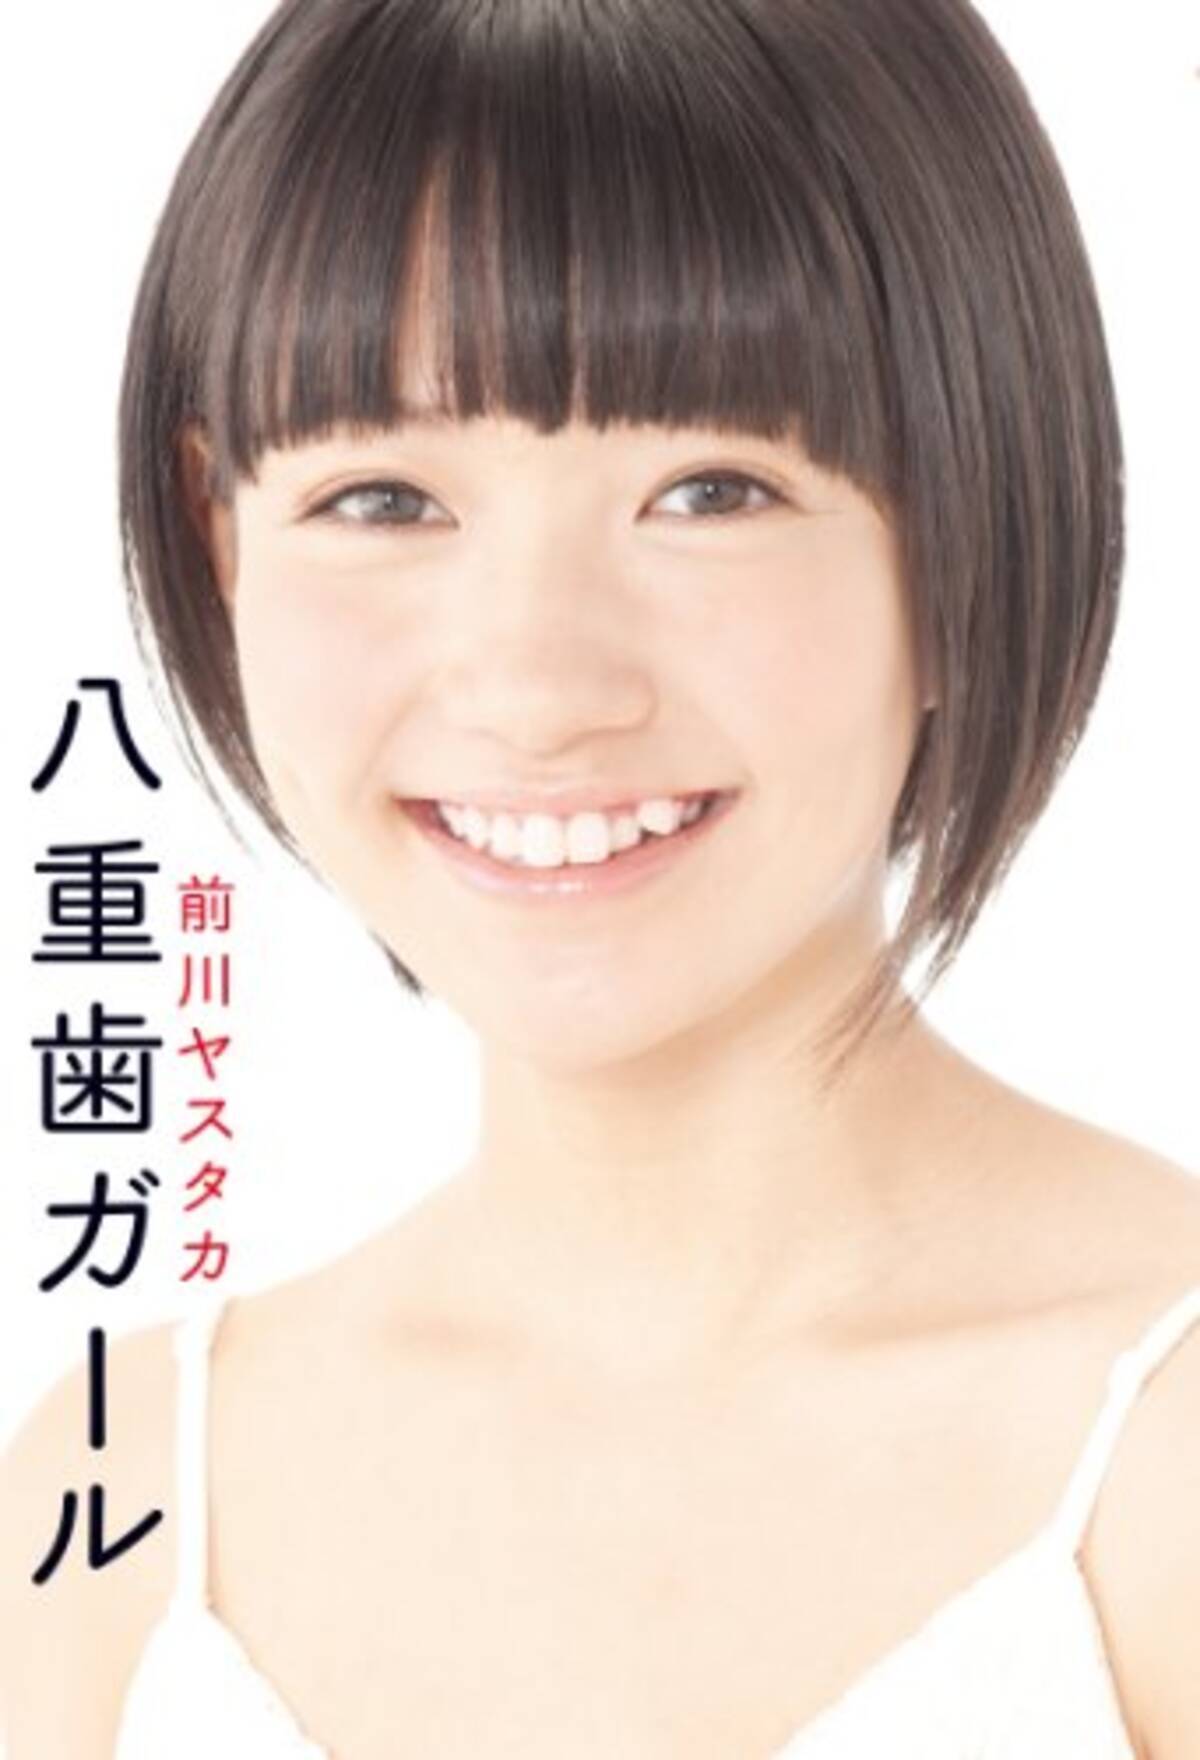 八重歯は日本の価値観じゃい かわいいんじゃい 八重歯ガール エキサイトニュース 4 5